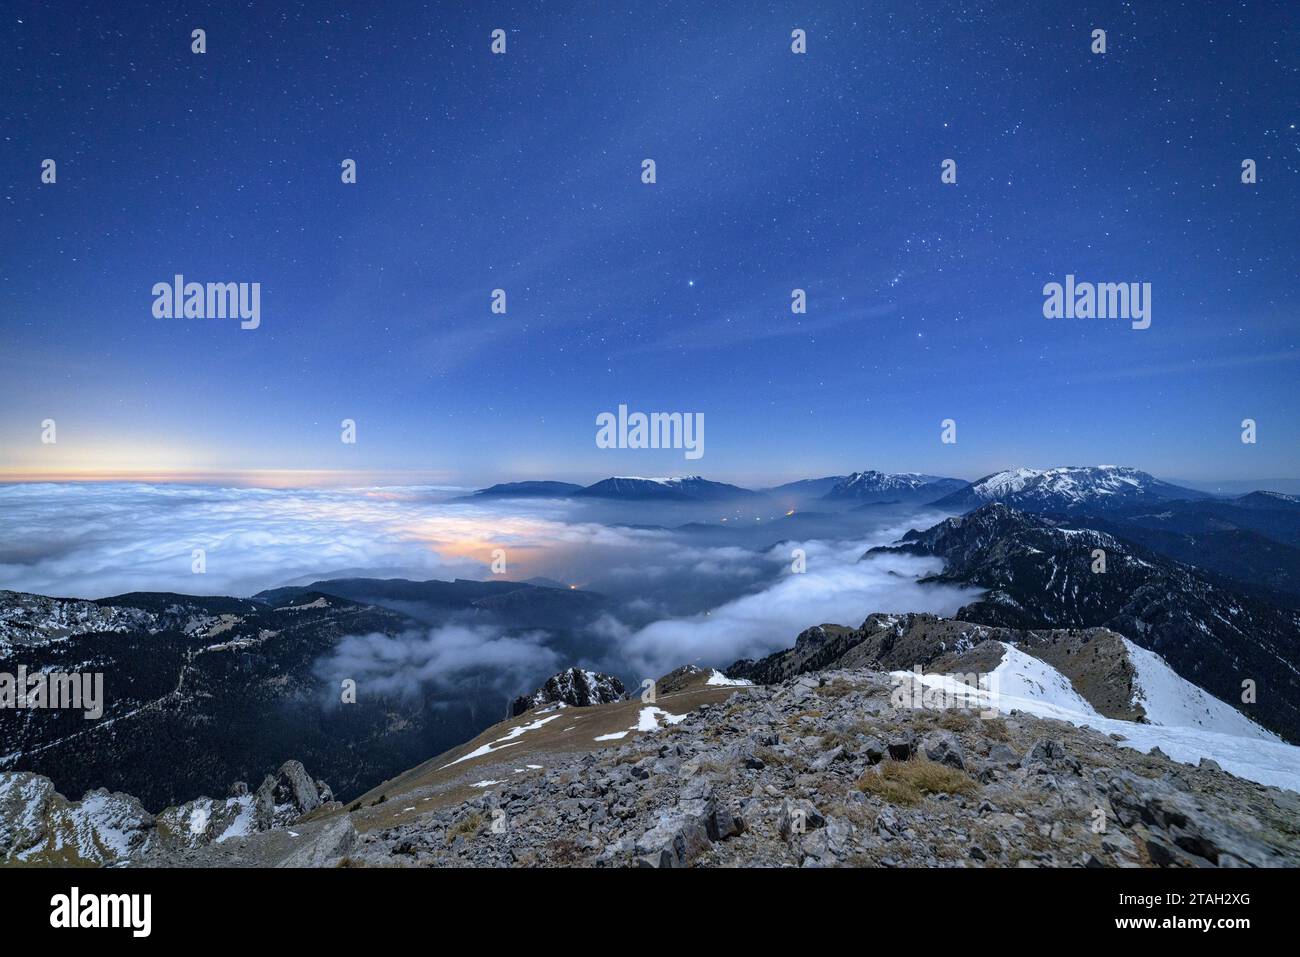 Notte invernale sulla cima della Tosa d'Alp, guardando verso Alt Berguedà con un mare di nuvole basse (Berguedà, Catalogna, Spagna, Pirenei) Foto Stock